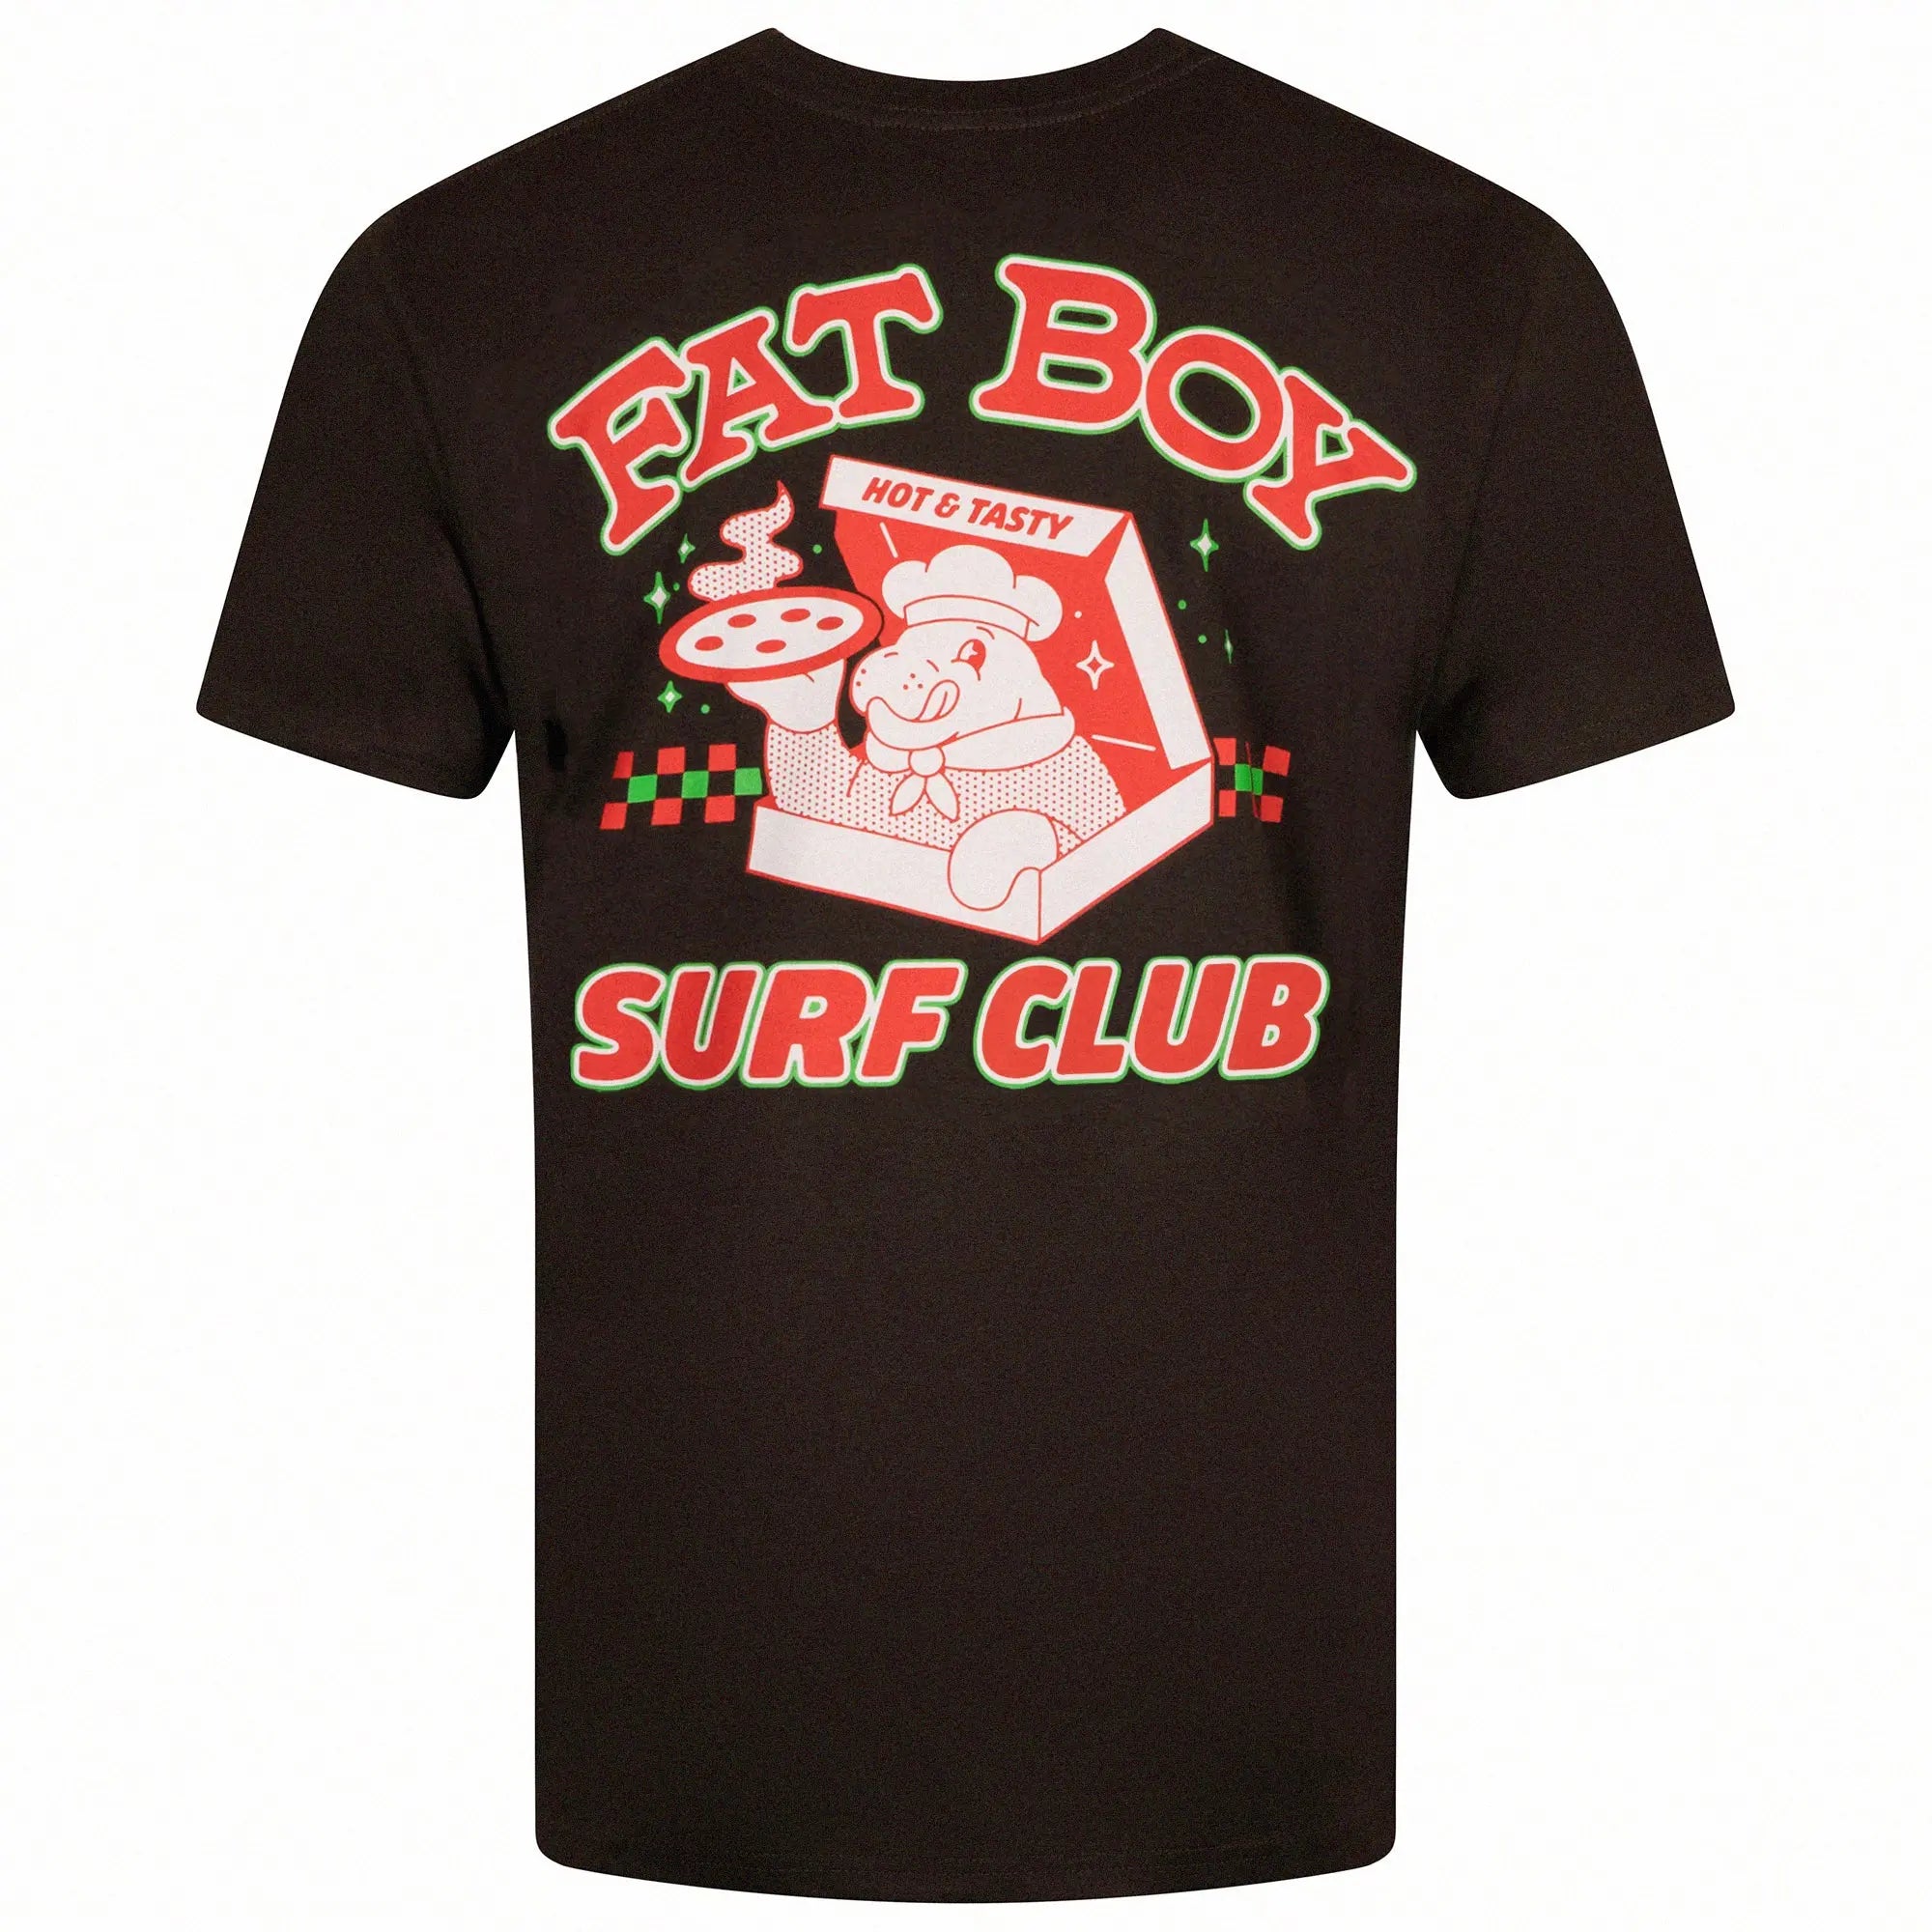 Hot N Tasty Tee - Vintage Black Fat Boy Surf Club